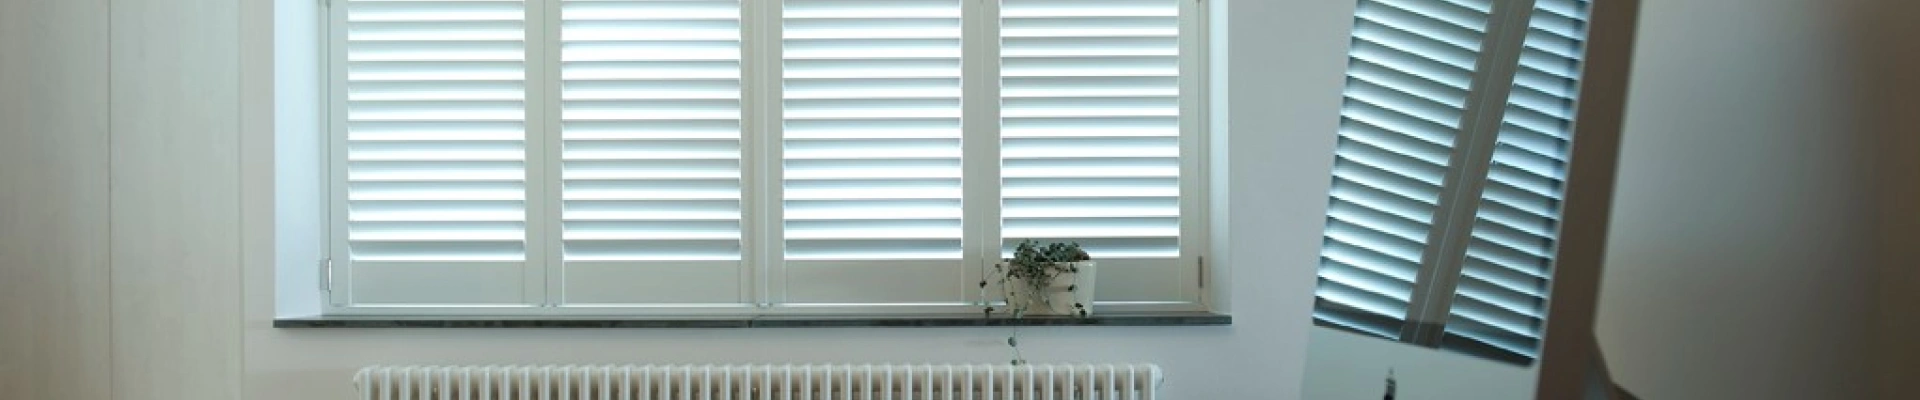 Witte shutters als raamdecoratie in werkruimte